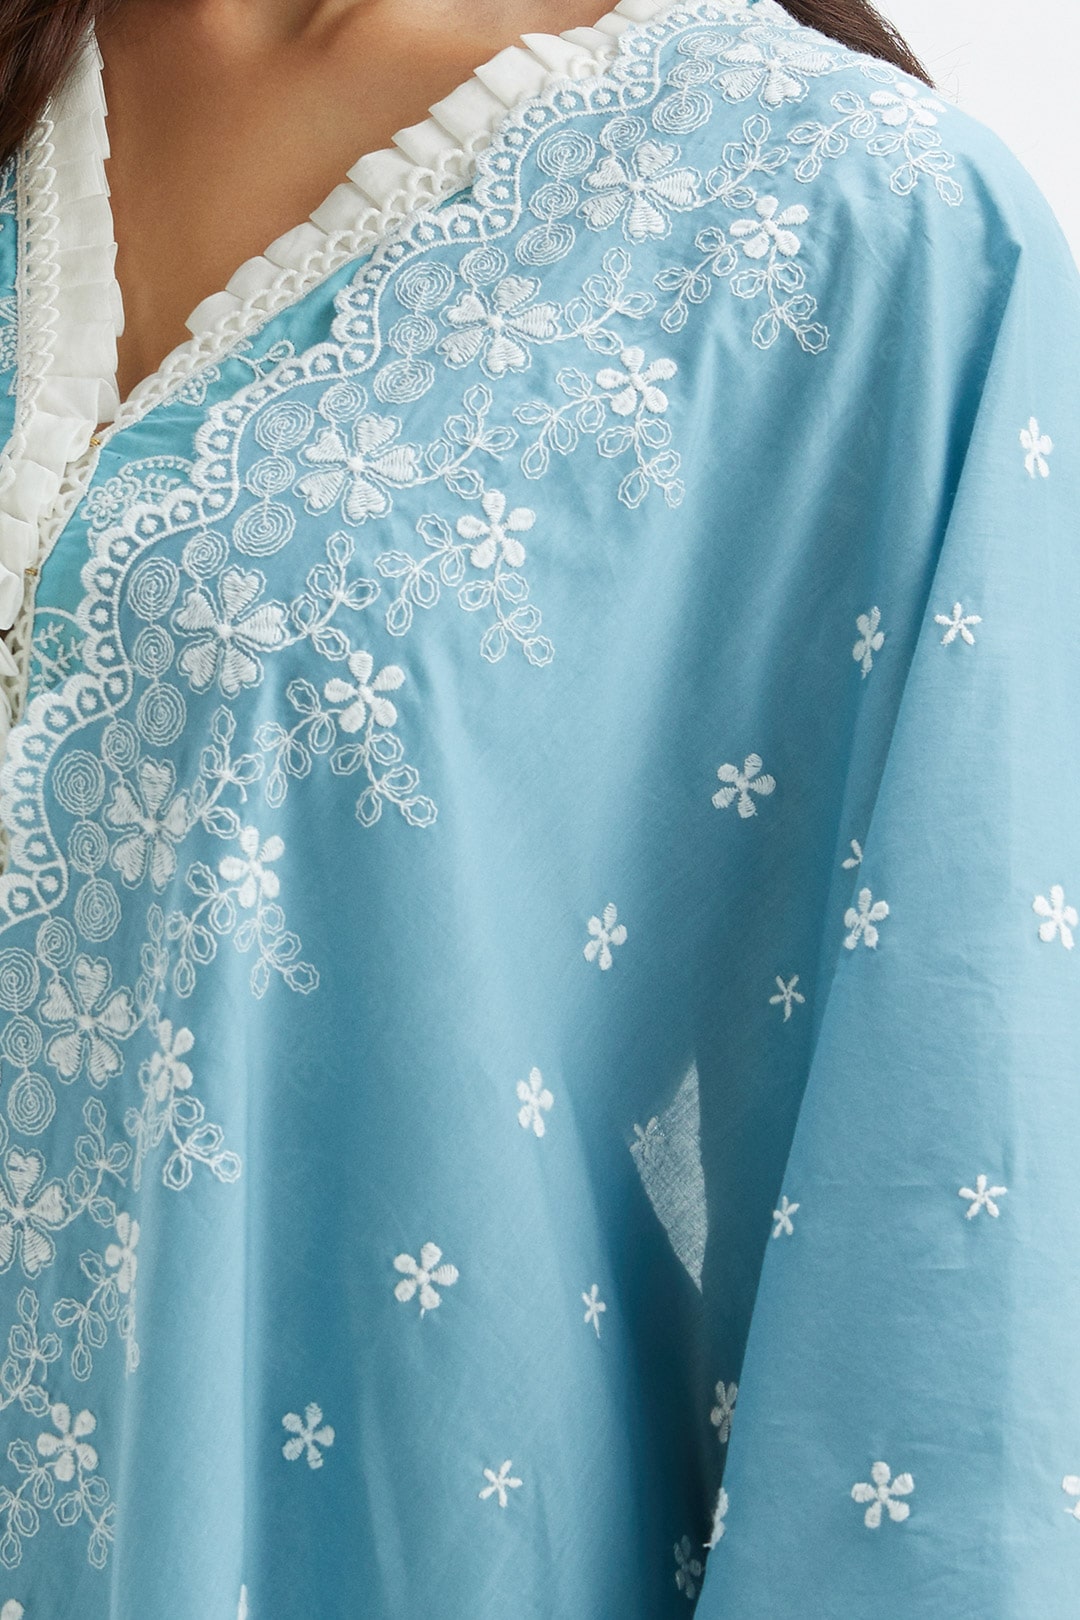 Mulmul Cotton Dunlin Blue Kurta With Broad Lace Insert White Pyajama